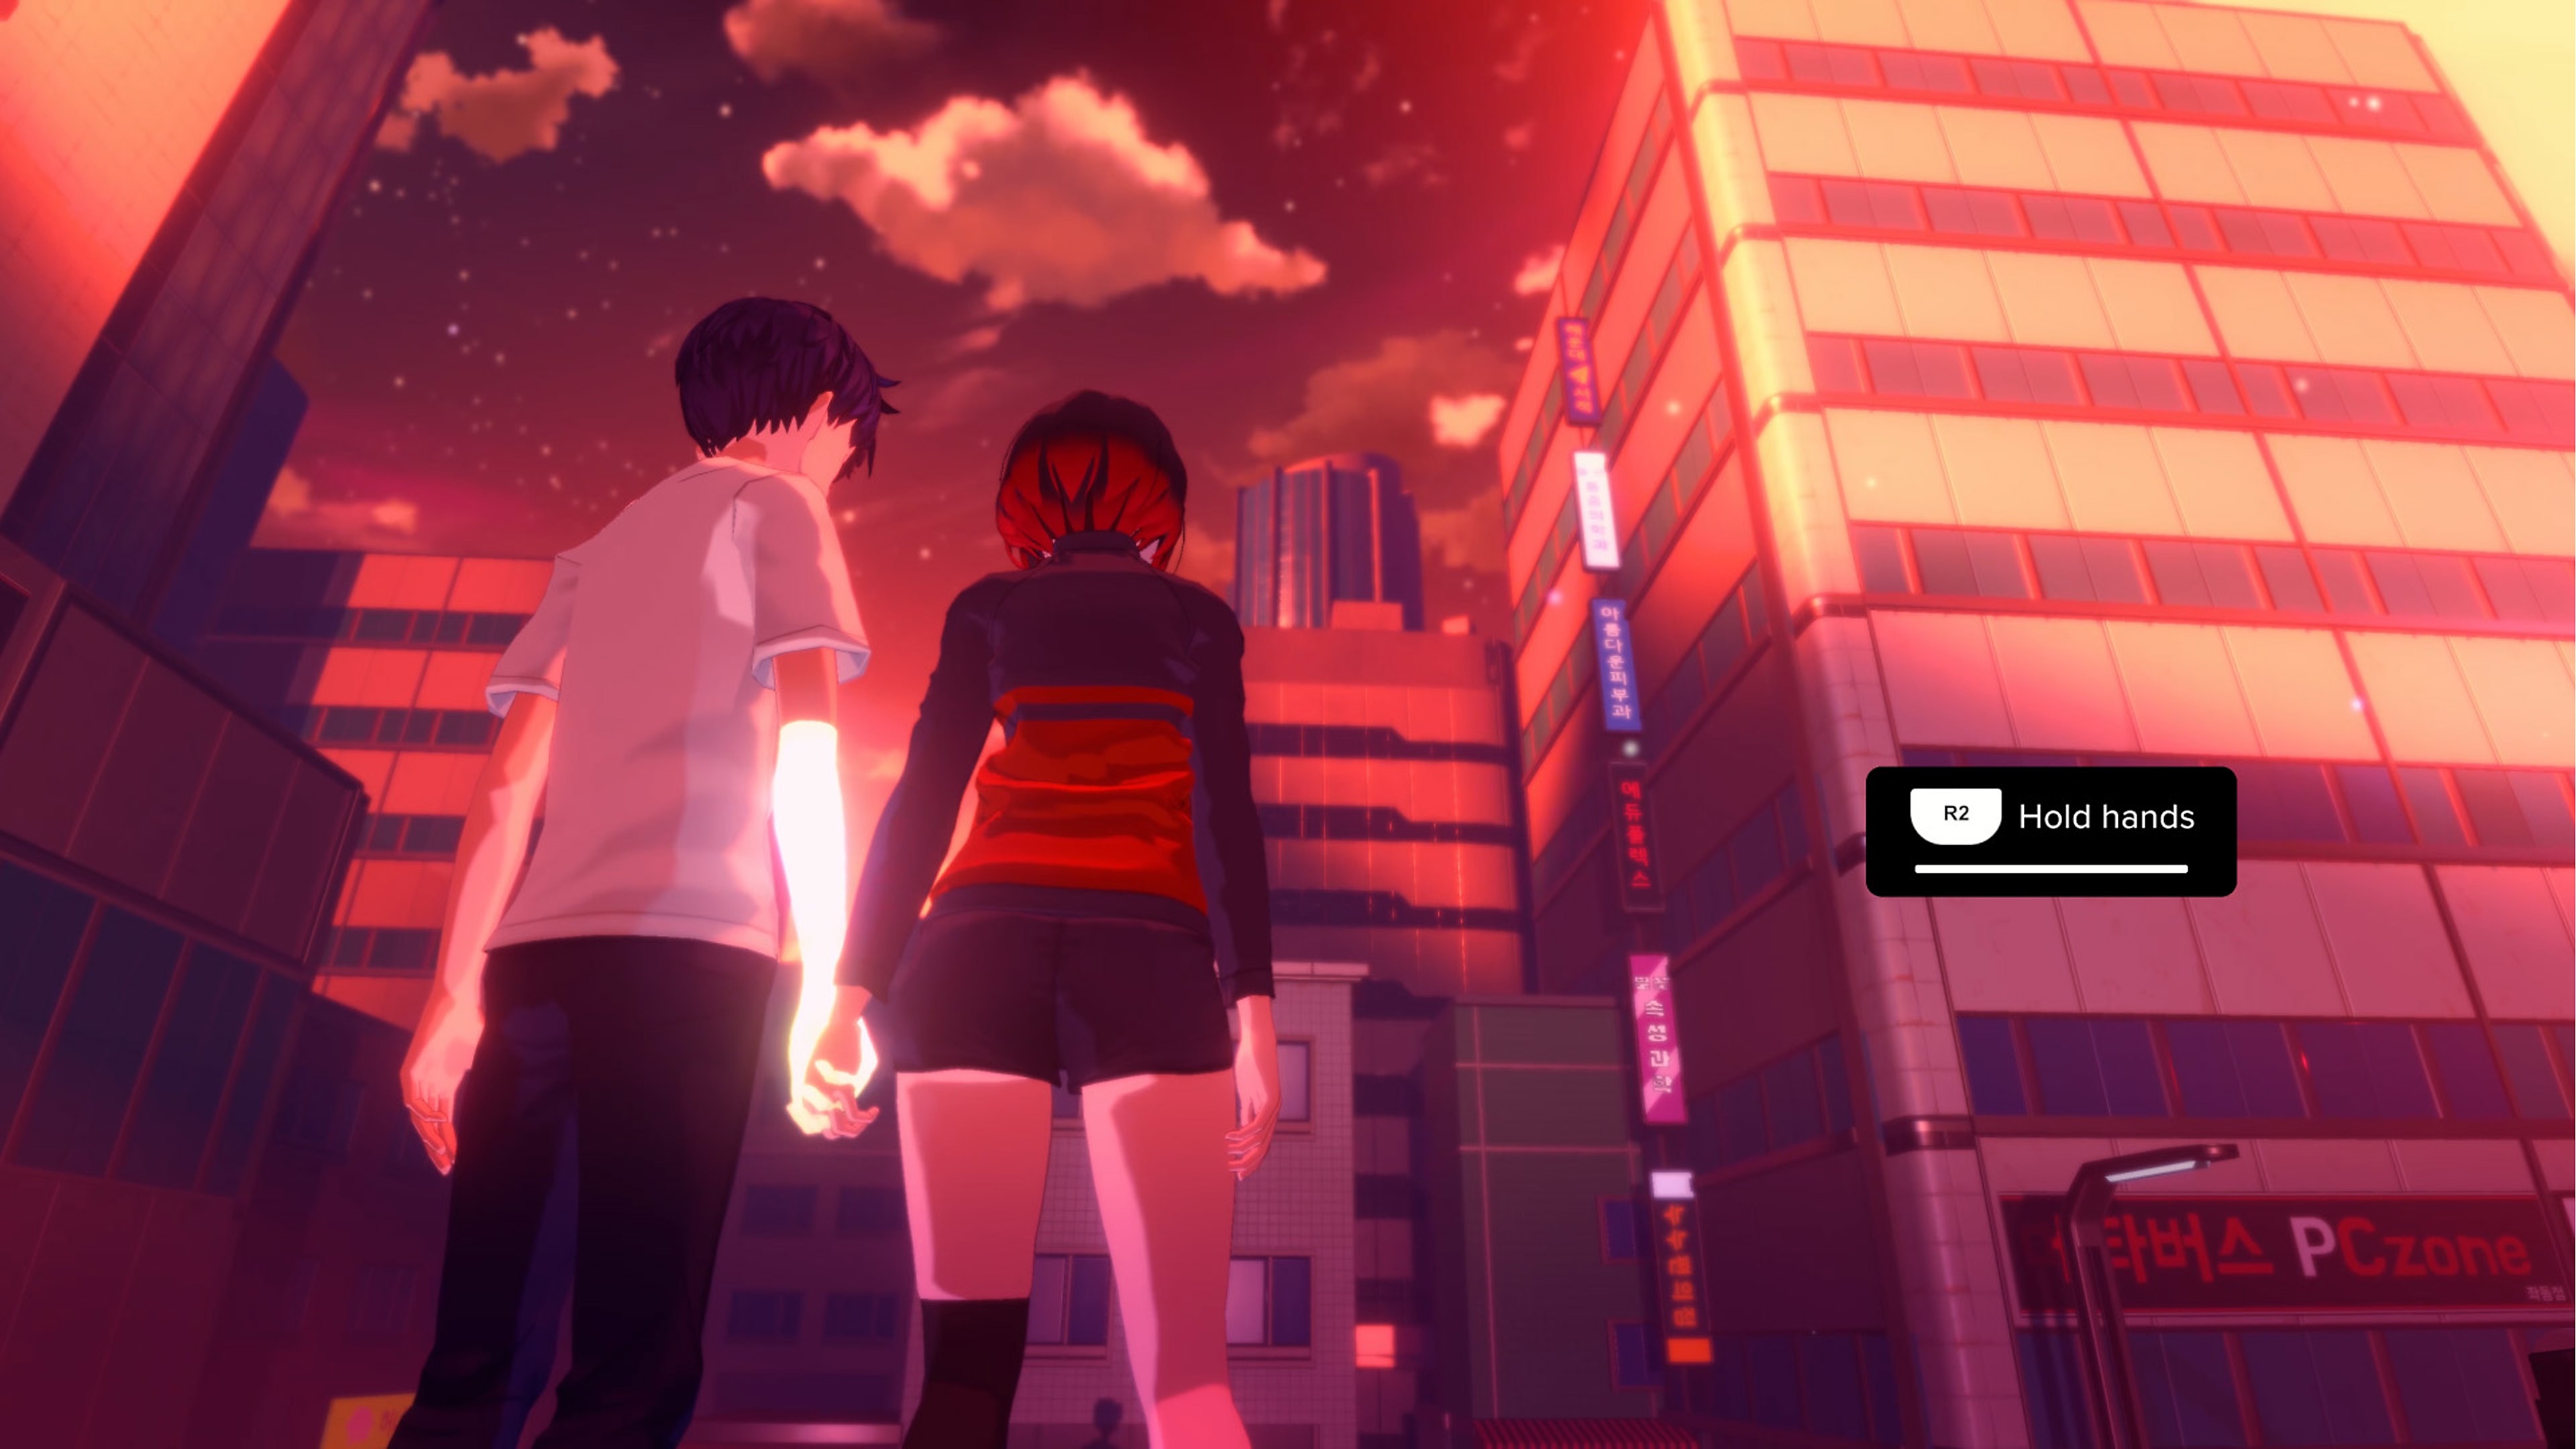 Captura de pantalla de Eternights que muestra a dos personajes con edad de secundaria agarrados de las manos frente a un paisaje urbano de edificios altos.